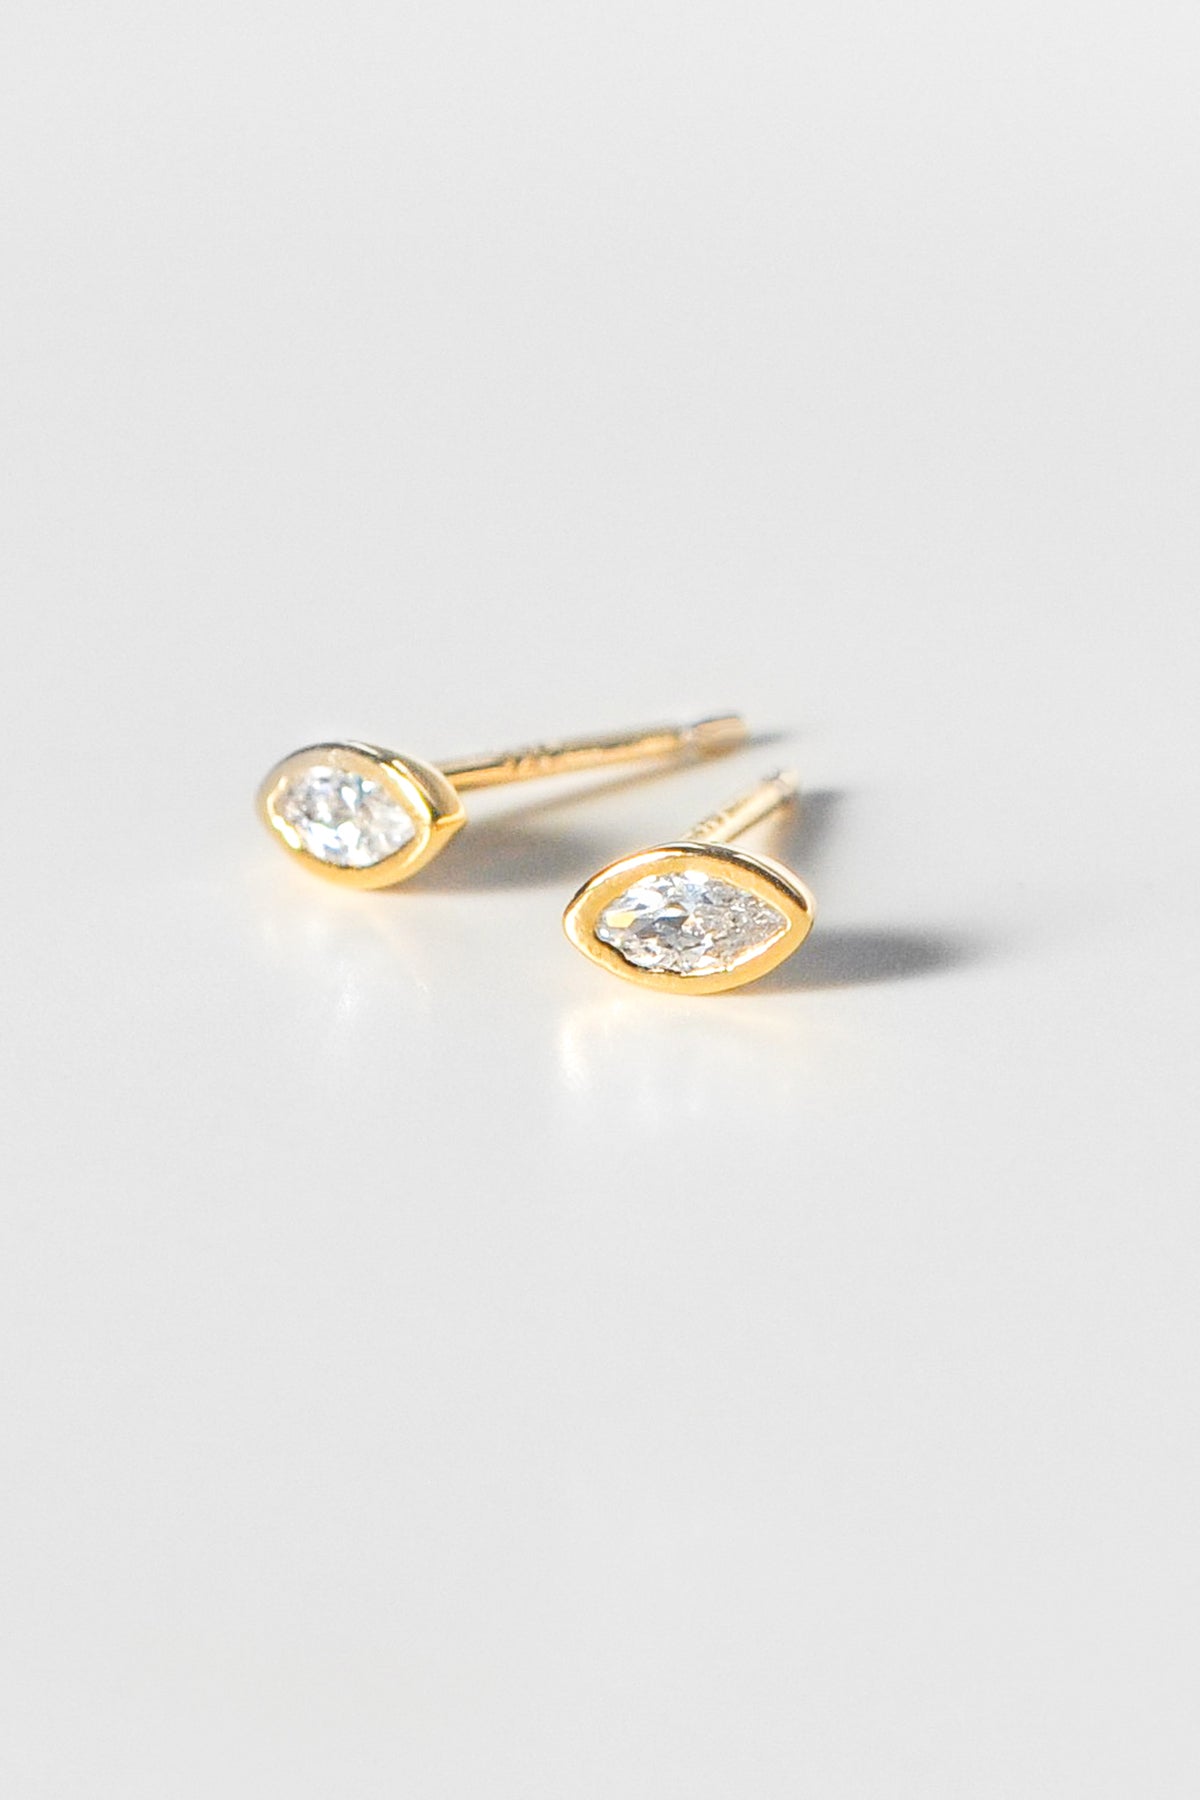 Iris Earrings Gold by Thatch-23749368611009